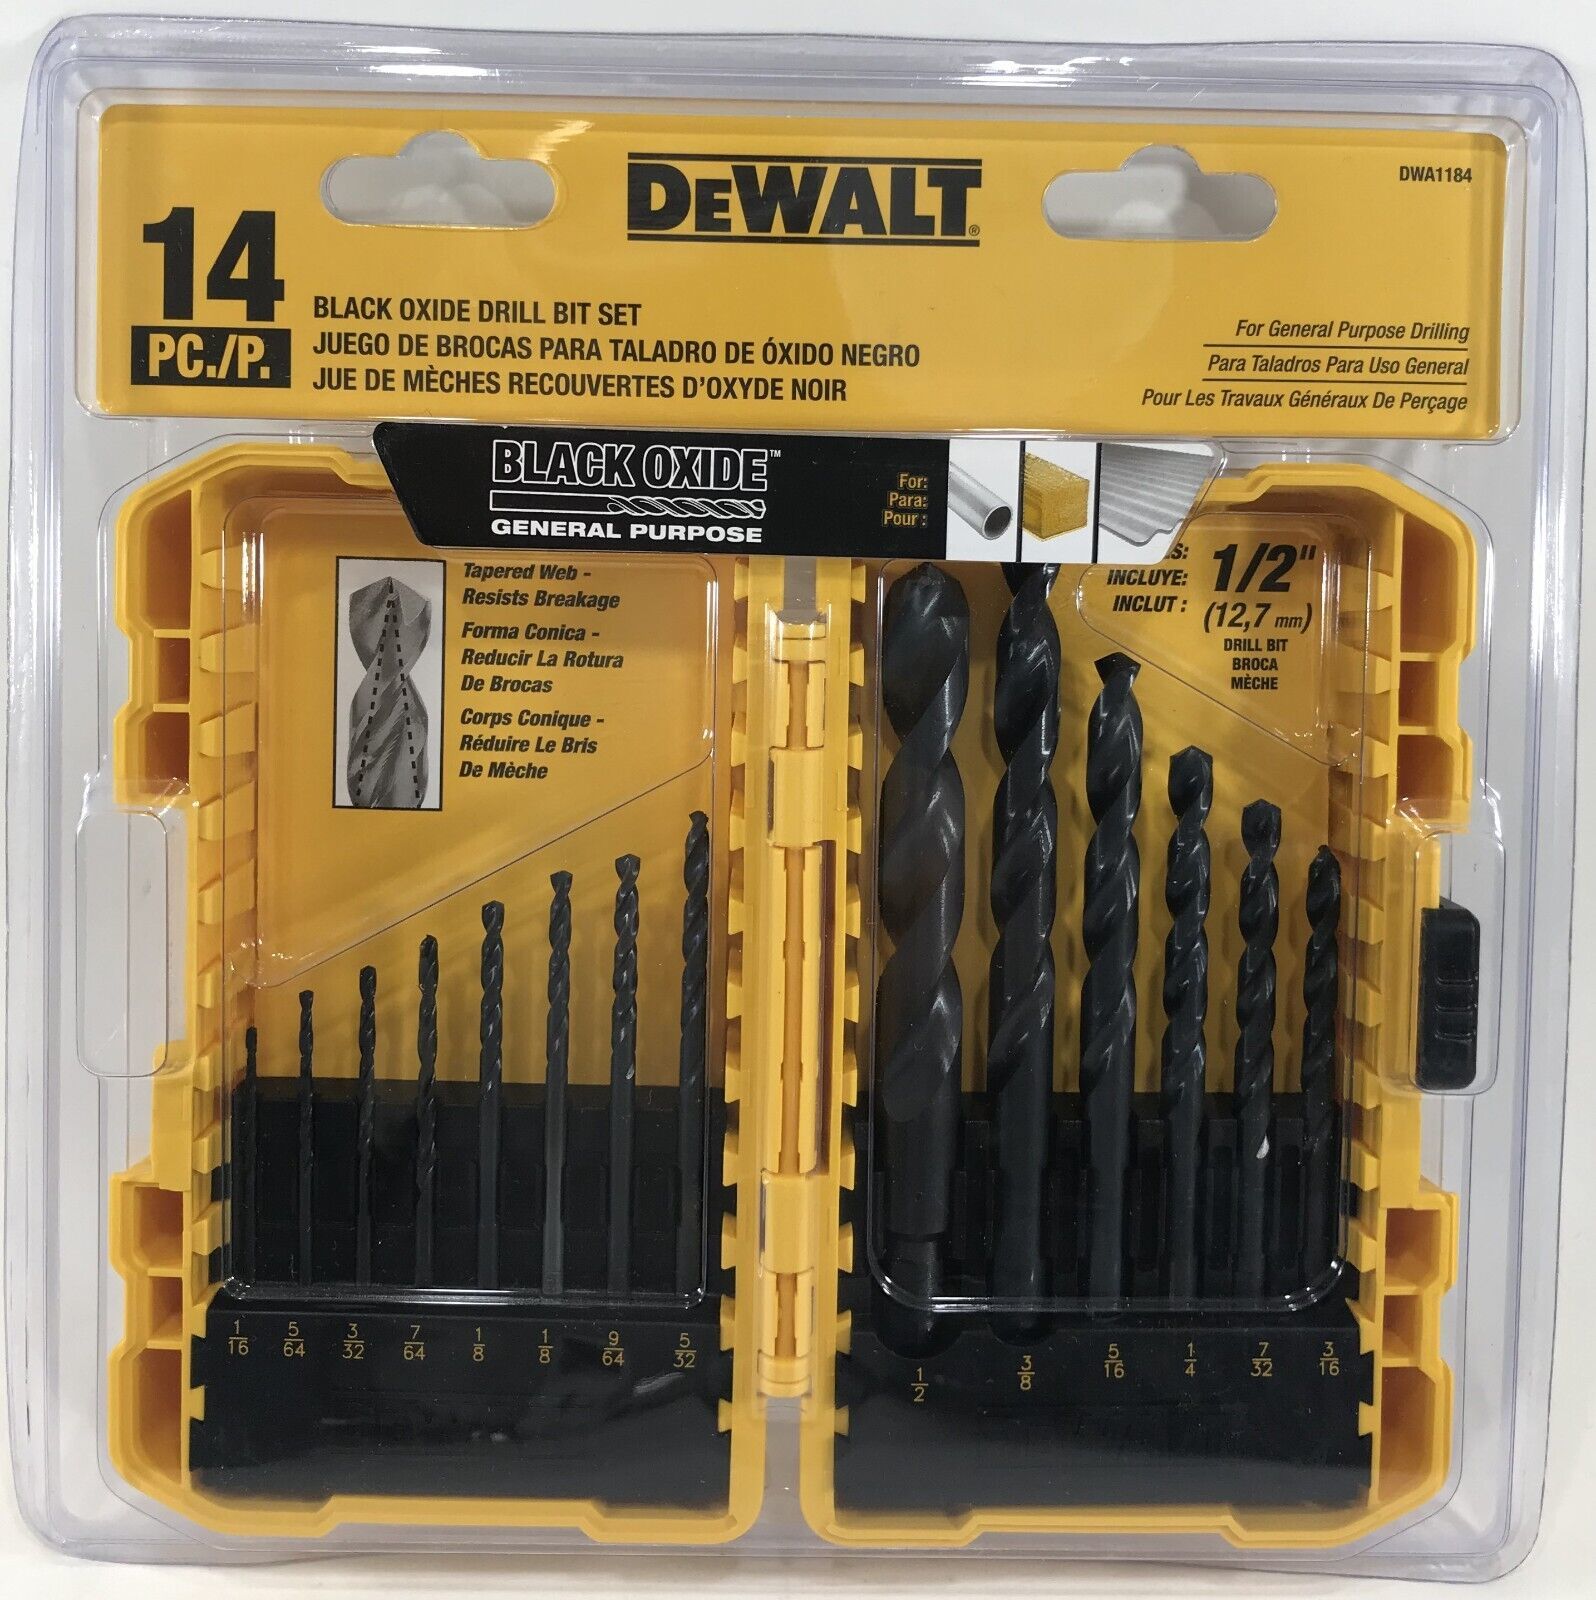 Primary image for DeWalt - DWA1184 - 14-Pack Black Oxide Twist Drill Bit Set